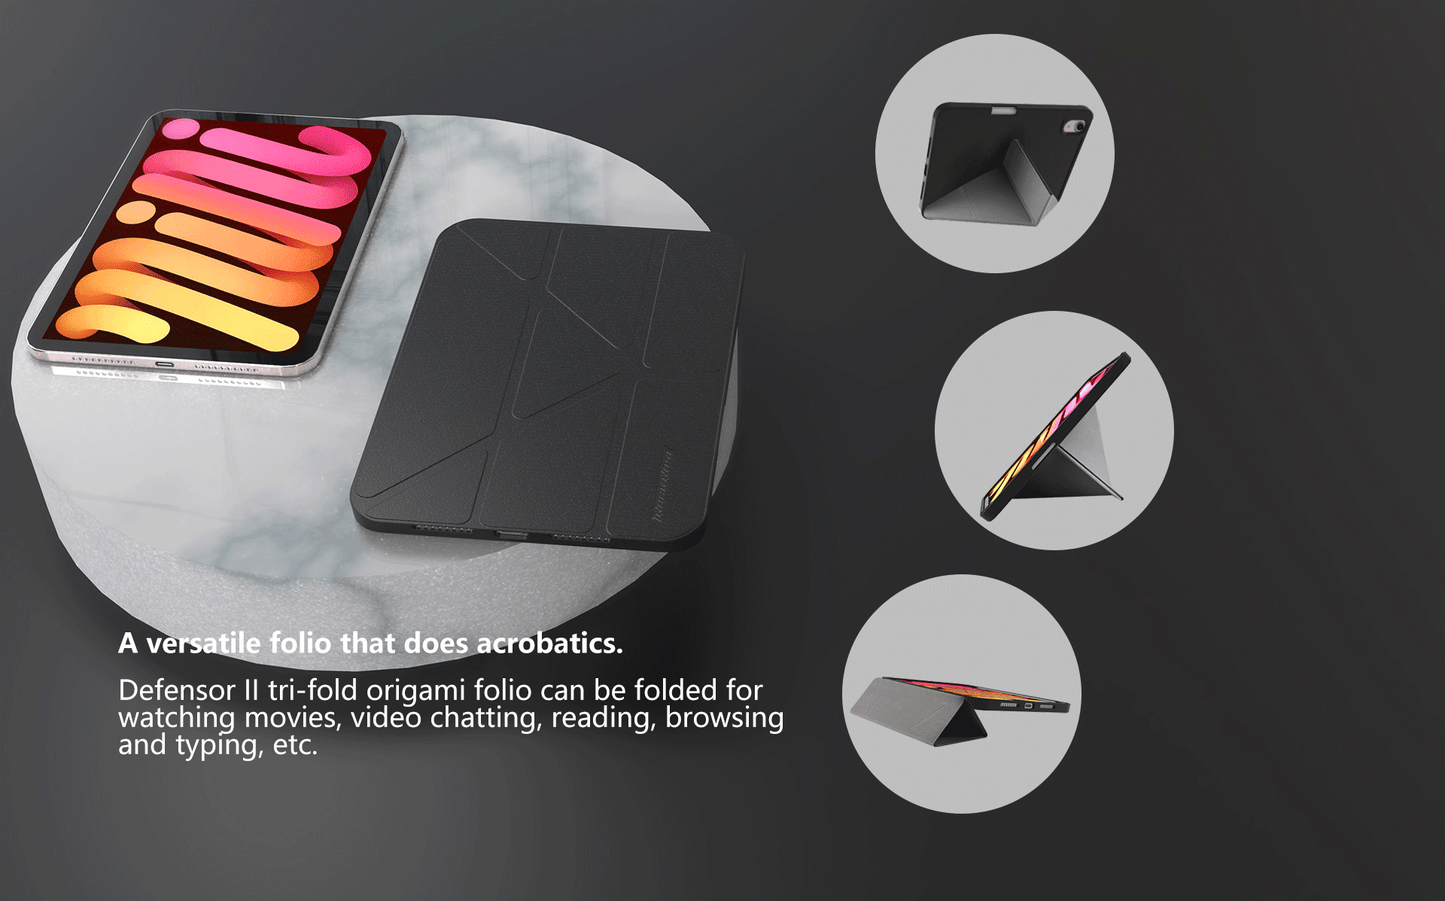 RockRose Defensor II Smart Tri-Fold Origami Folio for iPad mini 6 8.3″ 2021